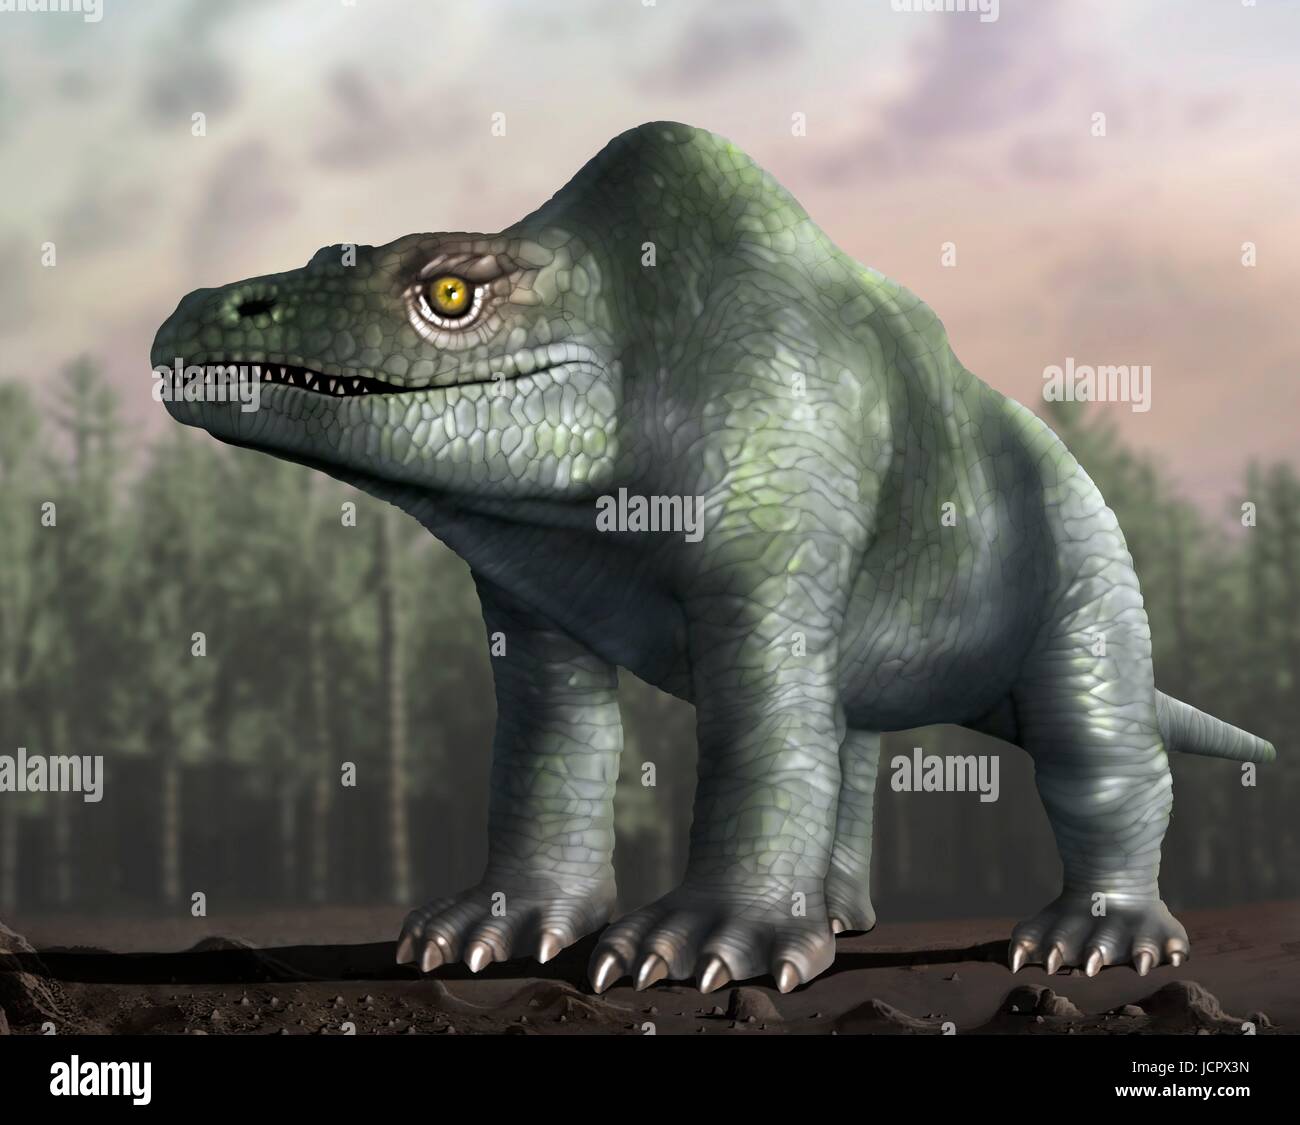 Es Megalosaurus género extintos dinosaurios que comen carne,los terópodos,desde mediados del período Jurásico en la historia de la tierra,166 millones de años.vivió en lo que ahora es el sur de Inglaterra.El primer fósil de dinosaurio jamás encontrado,hace ya mucho tiempo, en 1676,fue probablemente fragmento de hueso del muslo que pertenecieron a Megalosaurus.Este animal fue mediana terópodos,6 a 7 m de largo que pesa aproximadamente una tonelada.Esta ilustración muestra animal como se había pensado originalmente para aparecer,atrás en el siglo XIX.La imagen se basa estatuas famosas animal en Londres el Crystal Palace Park.Ahora sabemos que caminamos en dos piernas como otros terópodos. Foto de stock